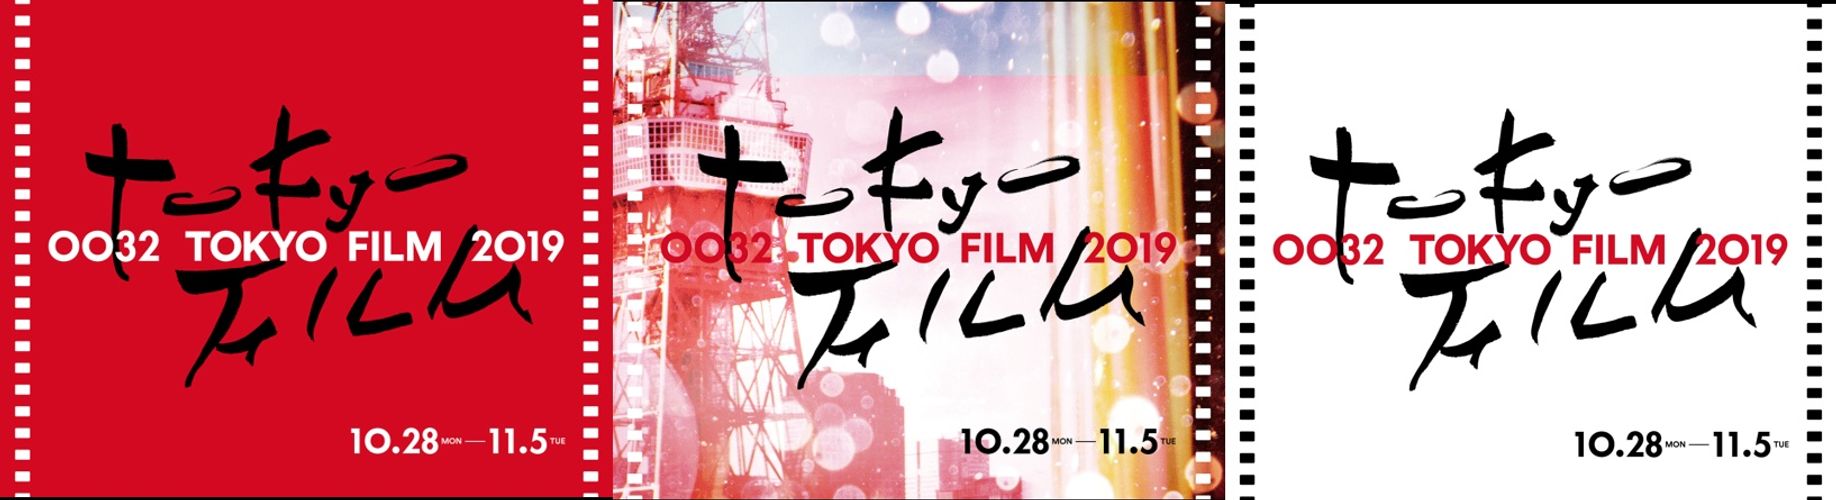 英語にも日本語にも読める!?第32回東京国際映画祭のユニークなロゴがお披露目